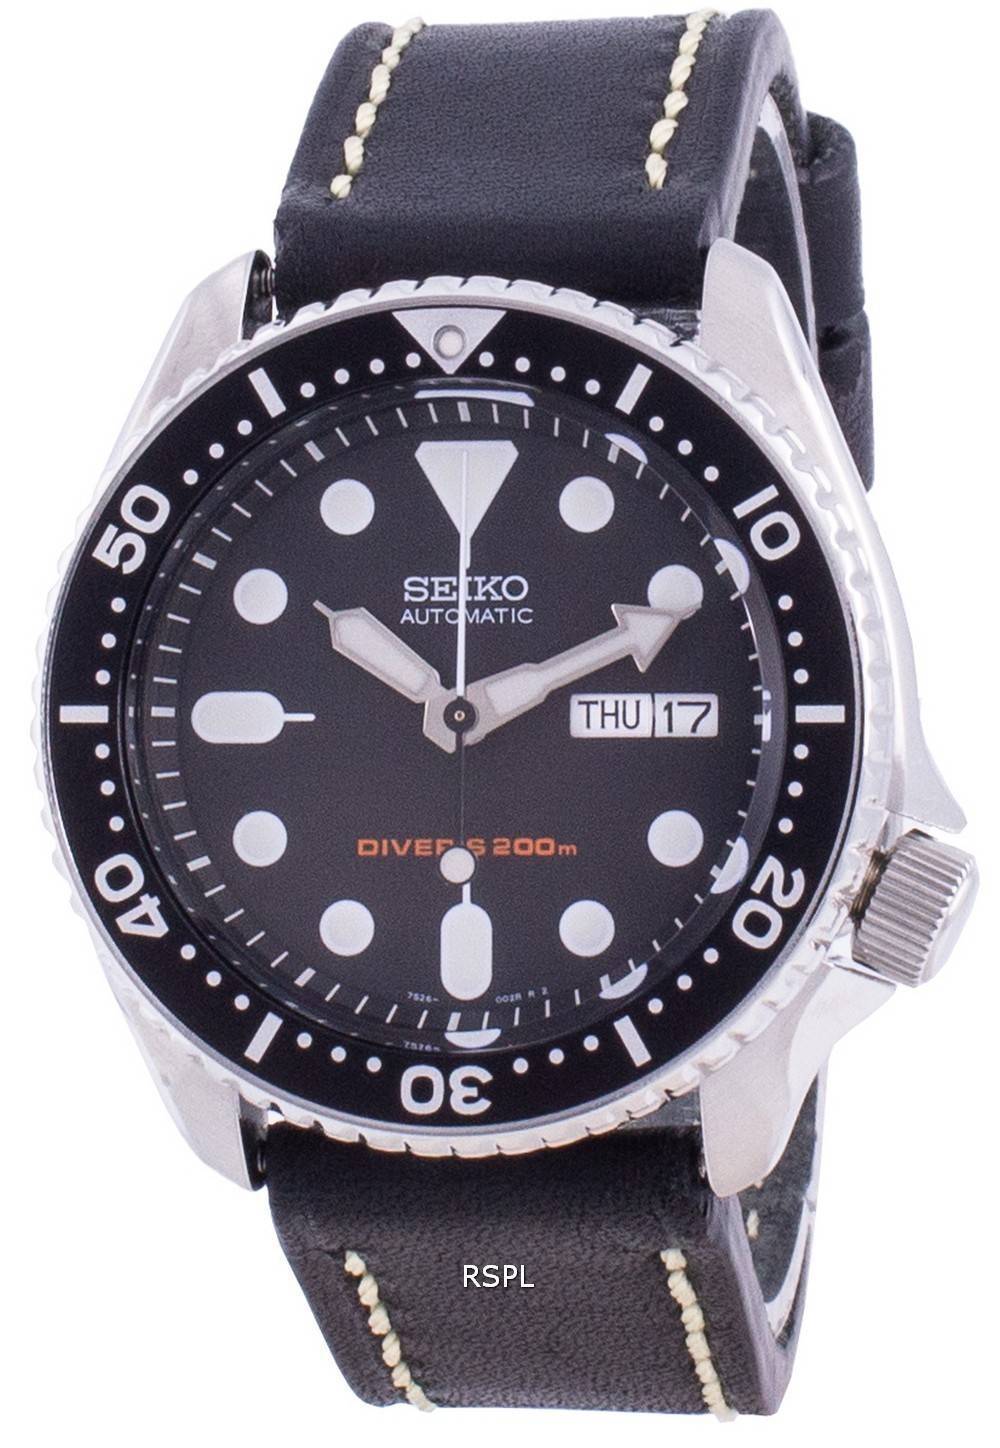 Seiko Automatic Diver's Black Dial SKX007K1-var-LS16 200M Men's Watch ...